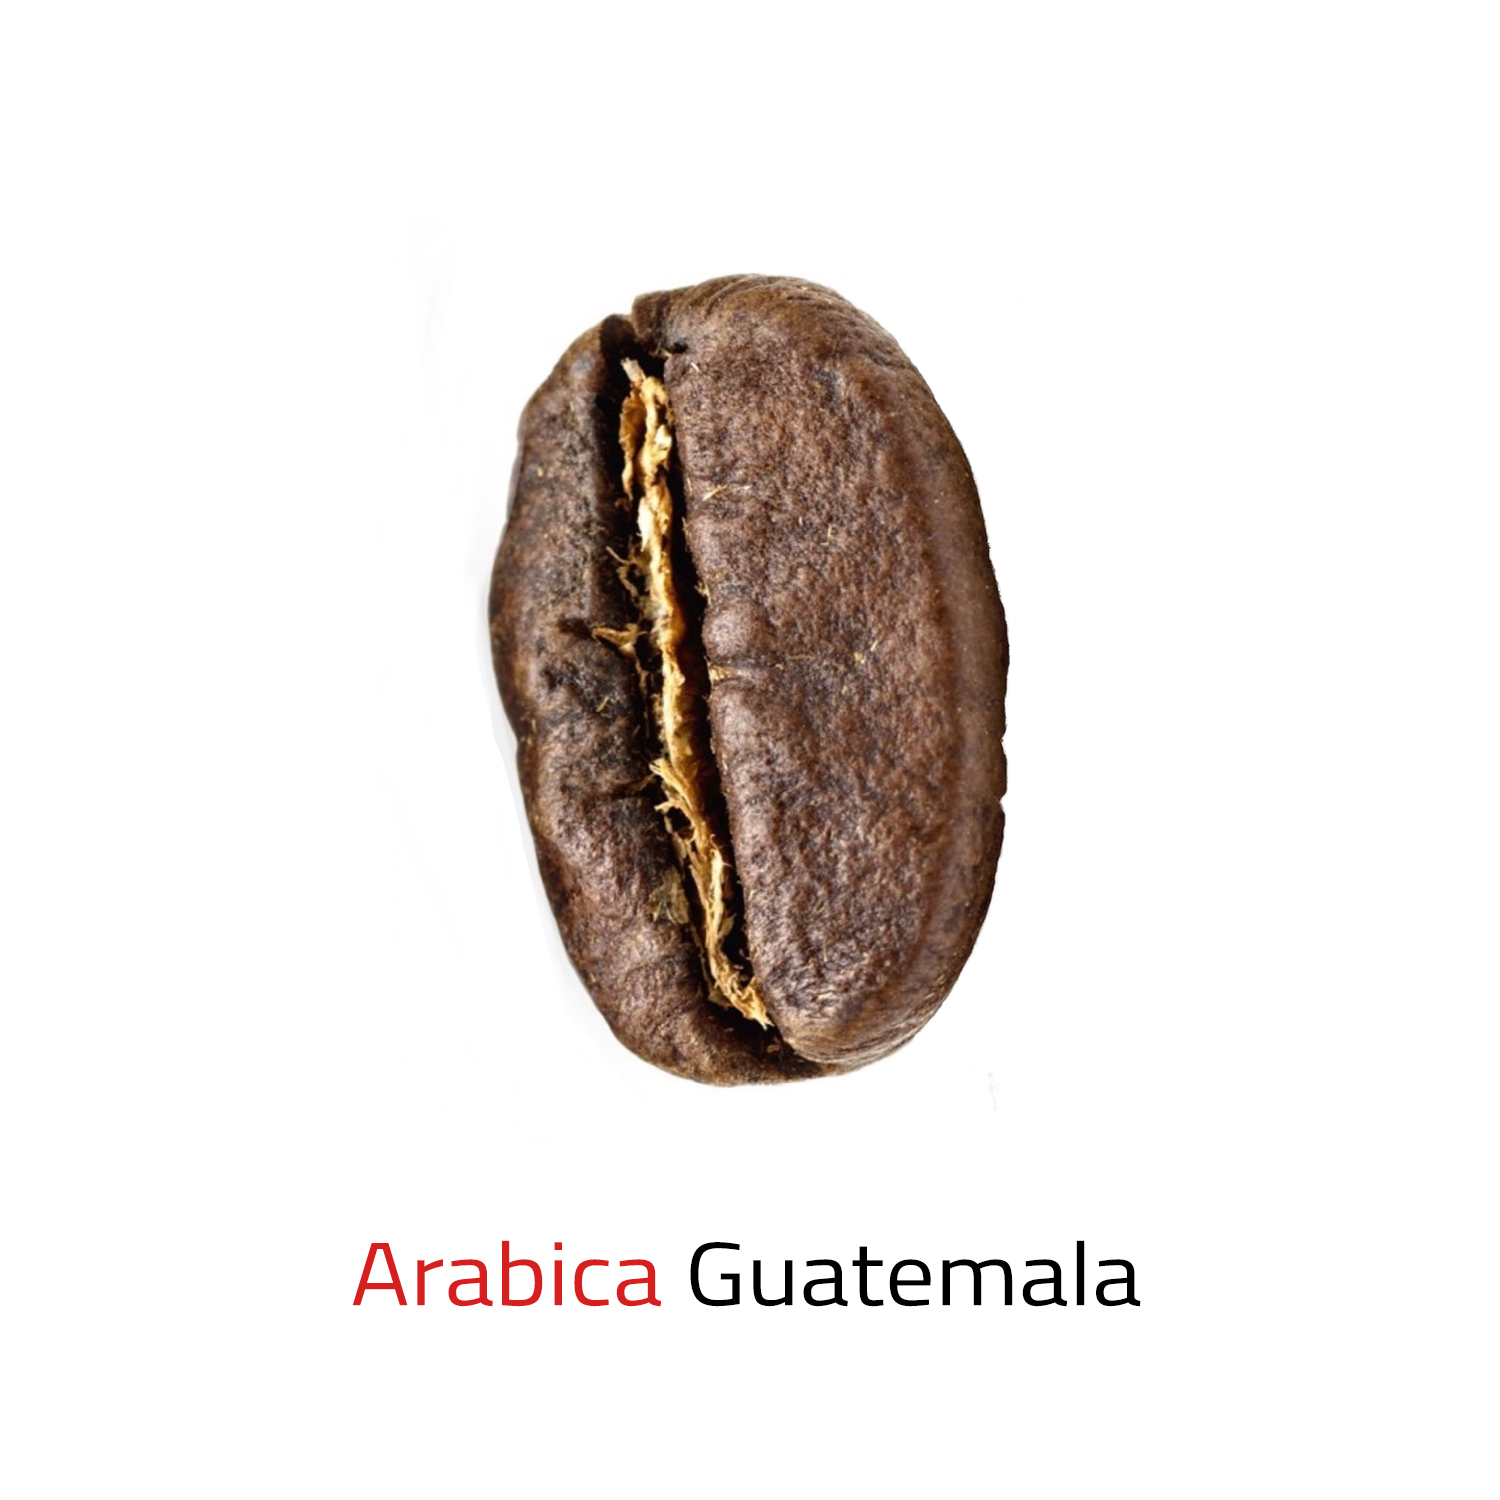 Čerstvě pražená káva zrnková Arabica Guatemala 